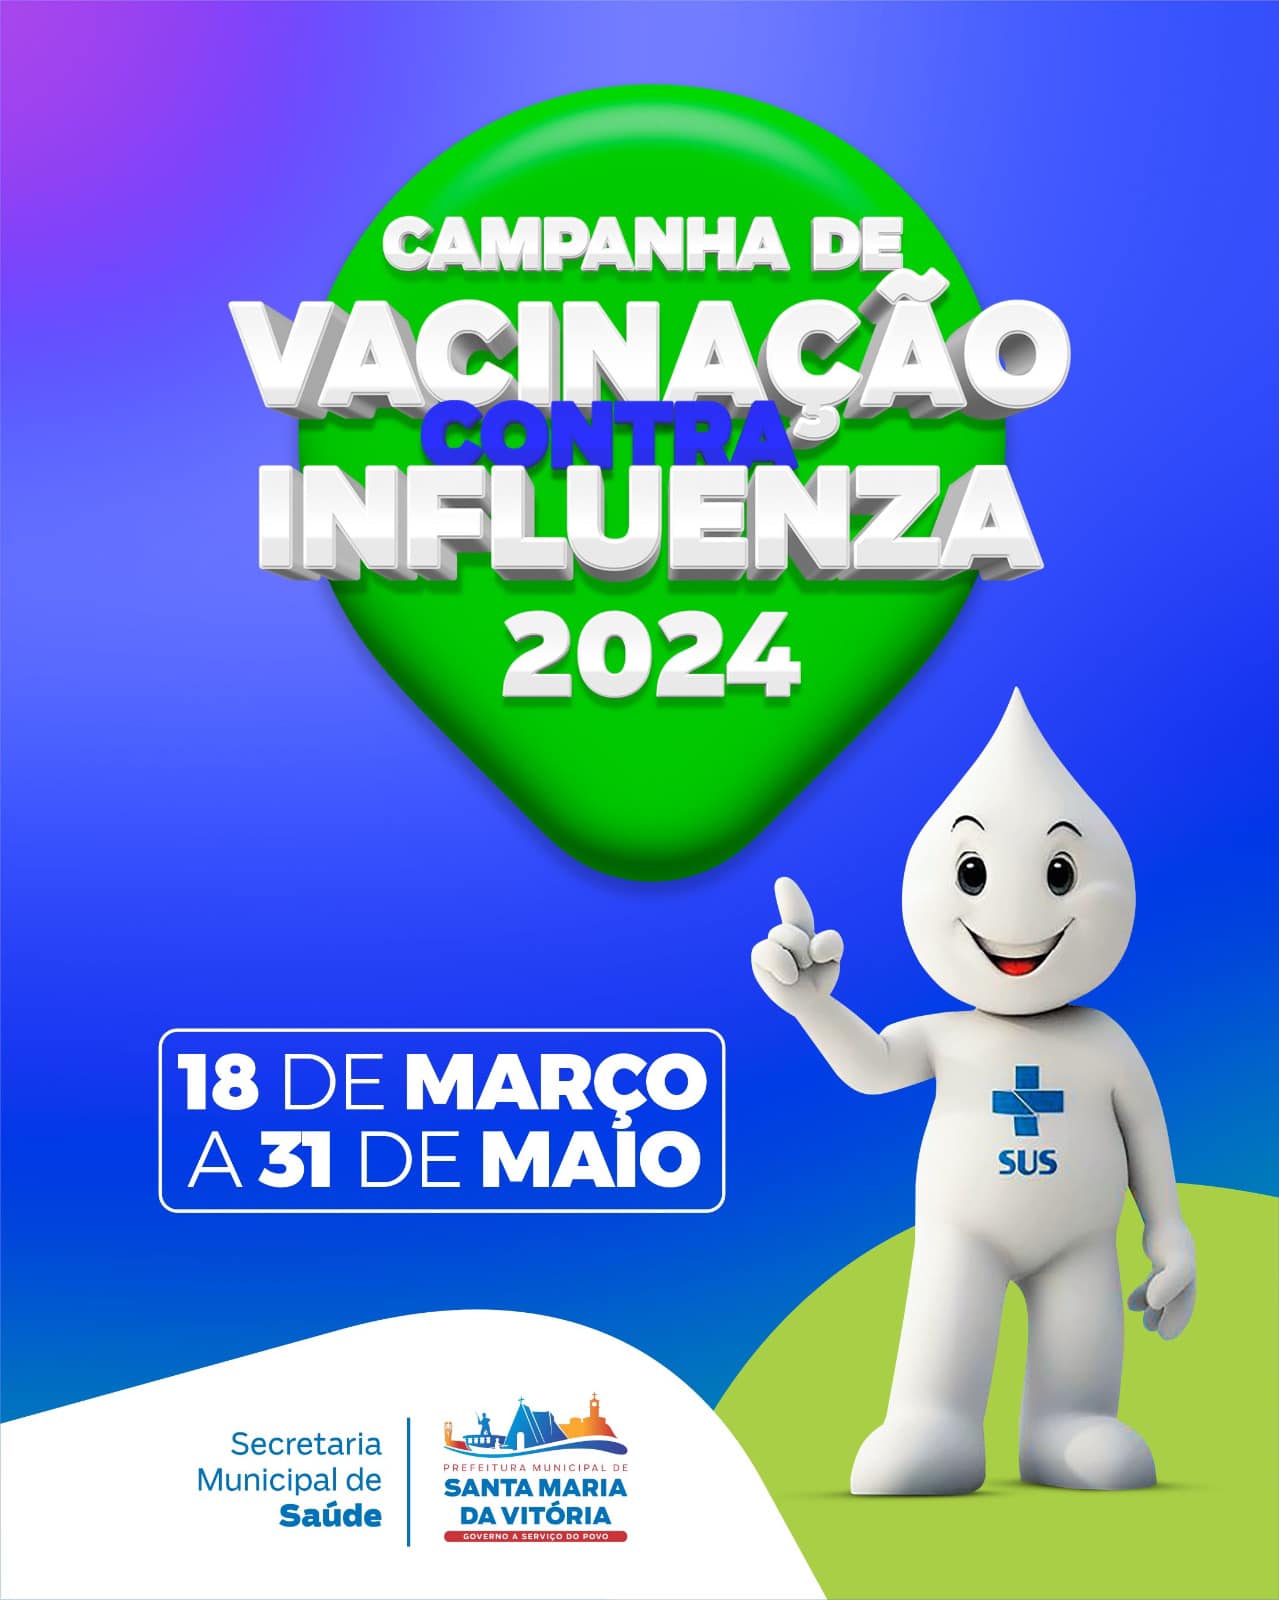 A campanha de vacinação contra a Influenza chegou!